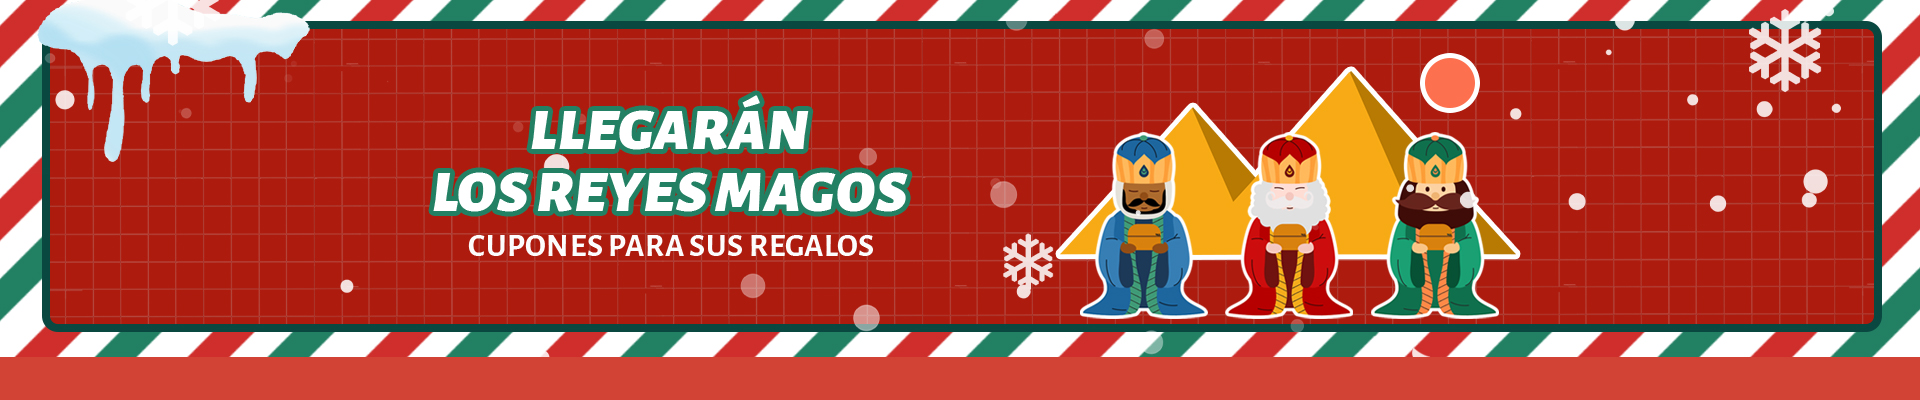 Venta de Reyes Magos | Obtén cupones de $67 y disfruta de excelentes ofertas | DHgate